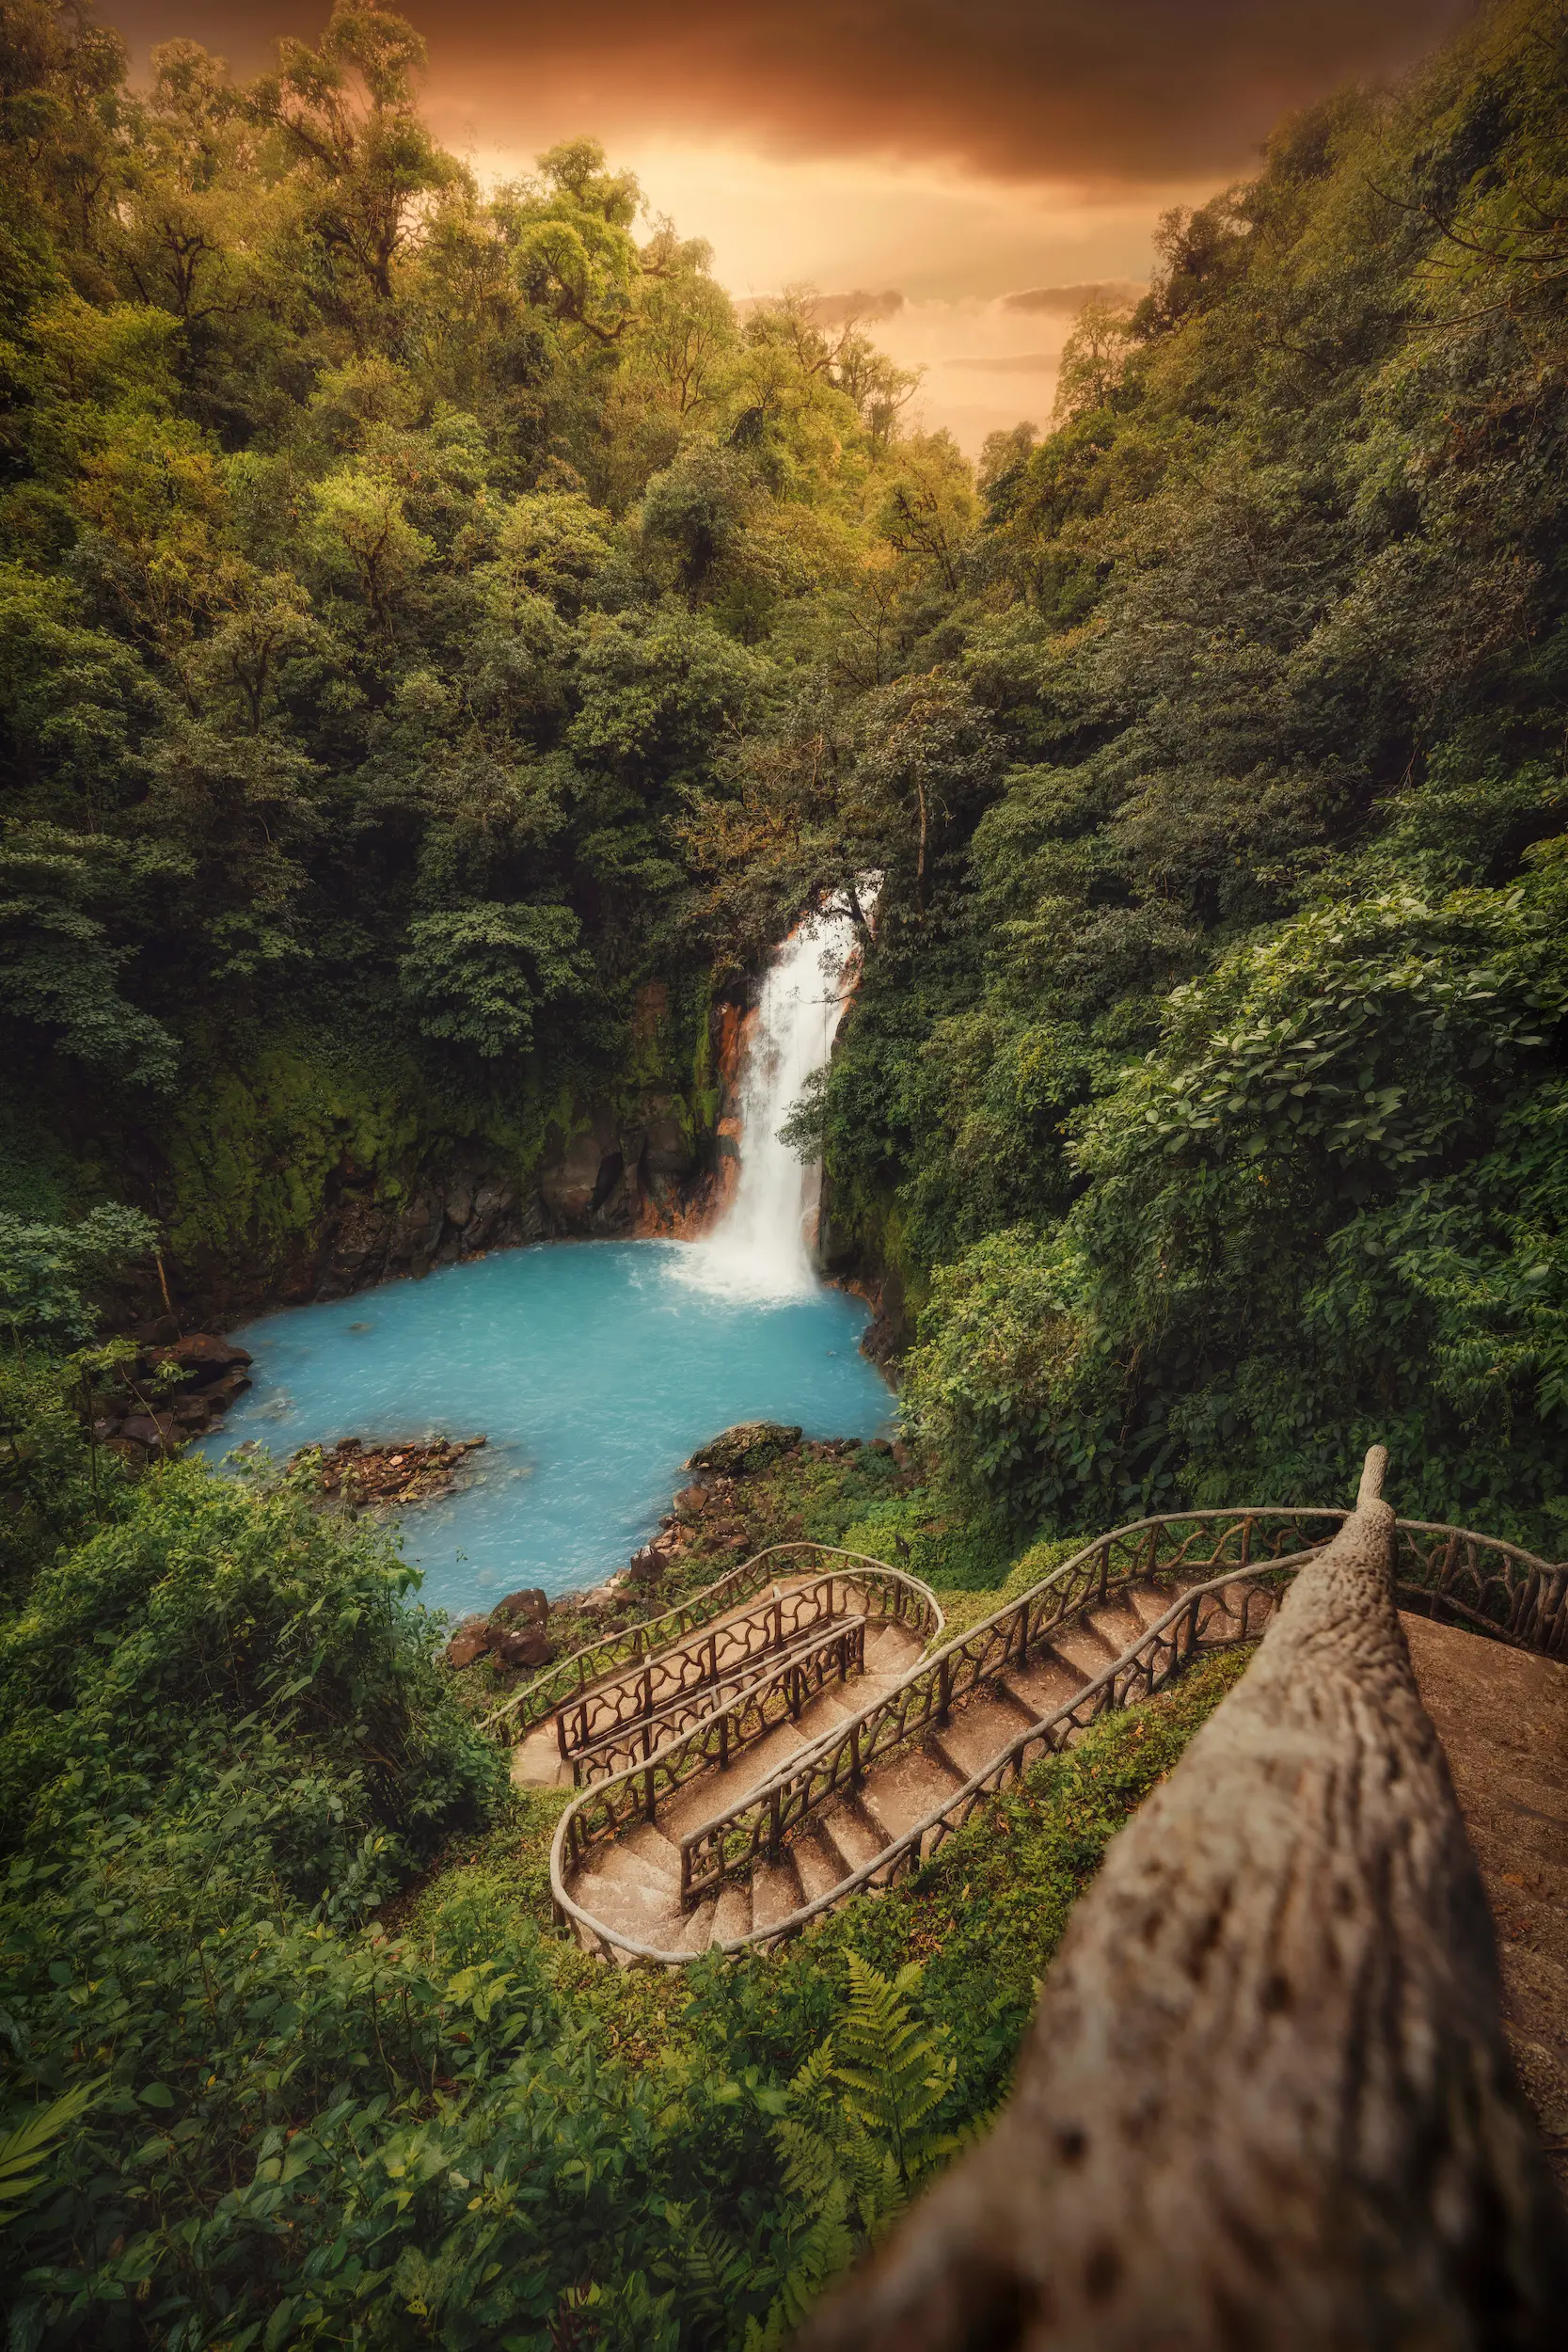 Rio Celeste Waterfall in Costa Rica